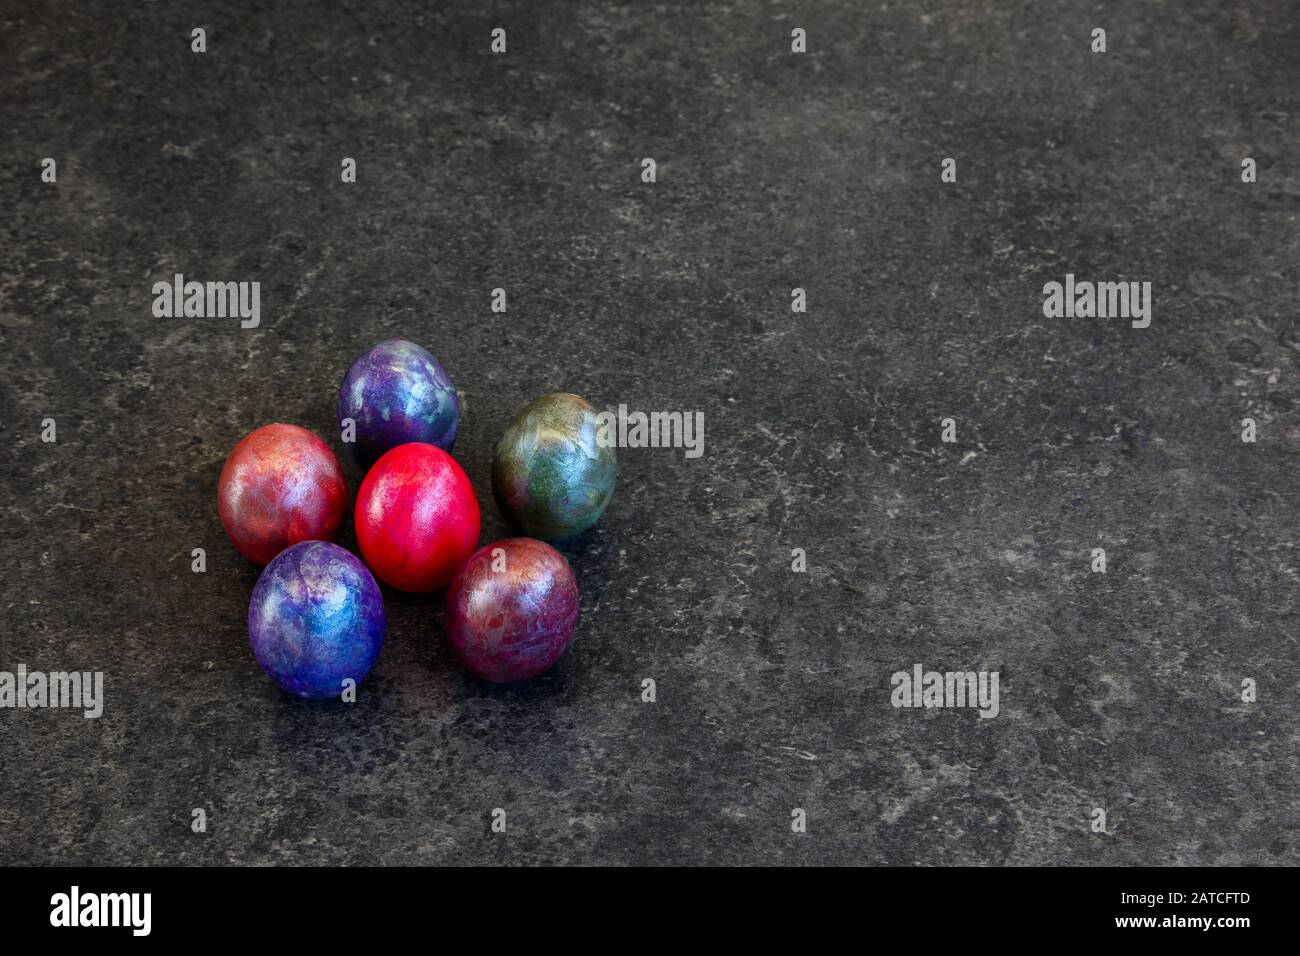 Six œufs marbrés de couleur sur fond sombre Banque D'Images